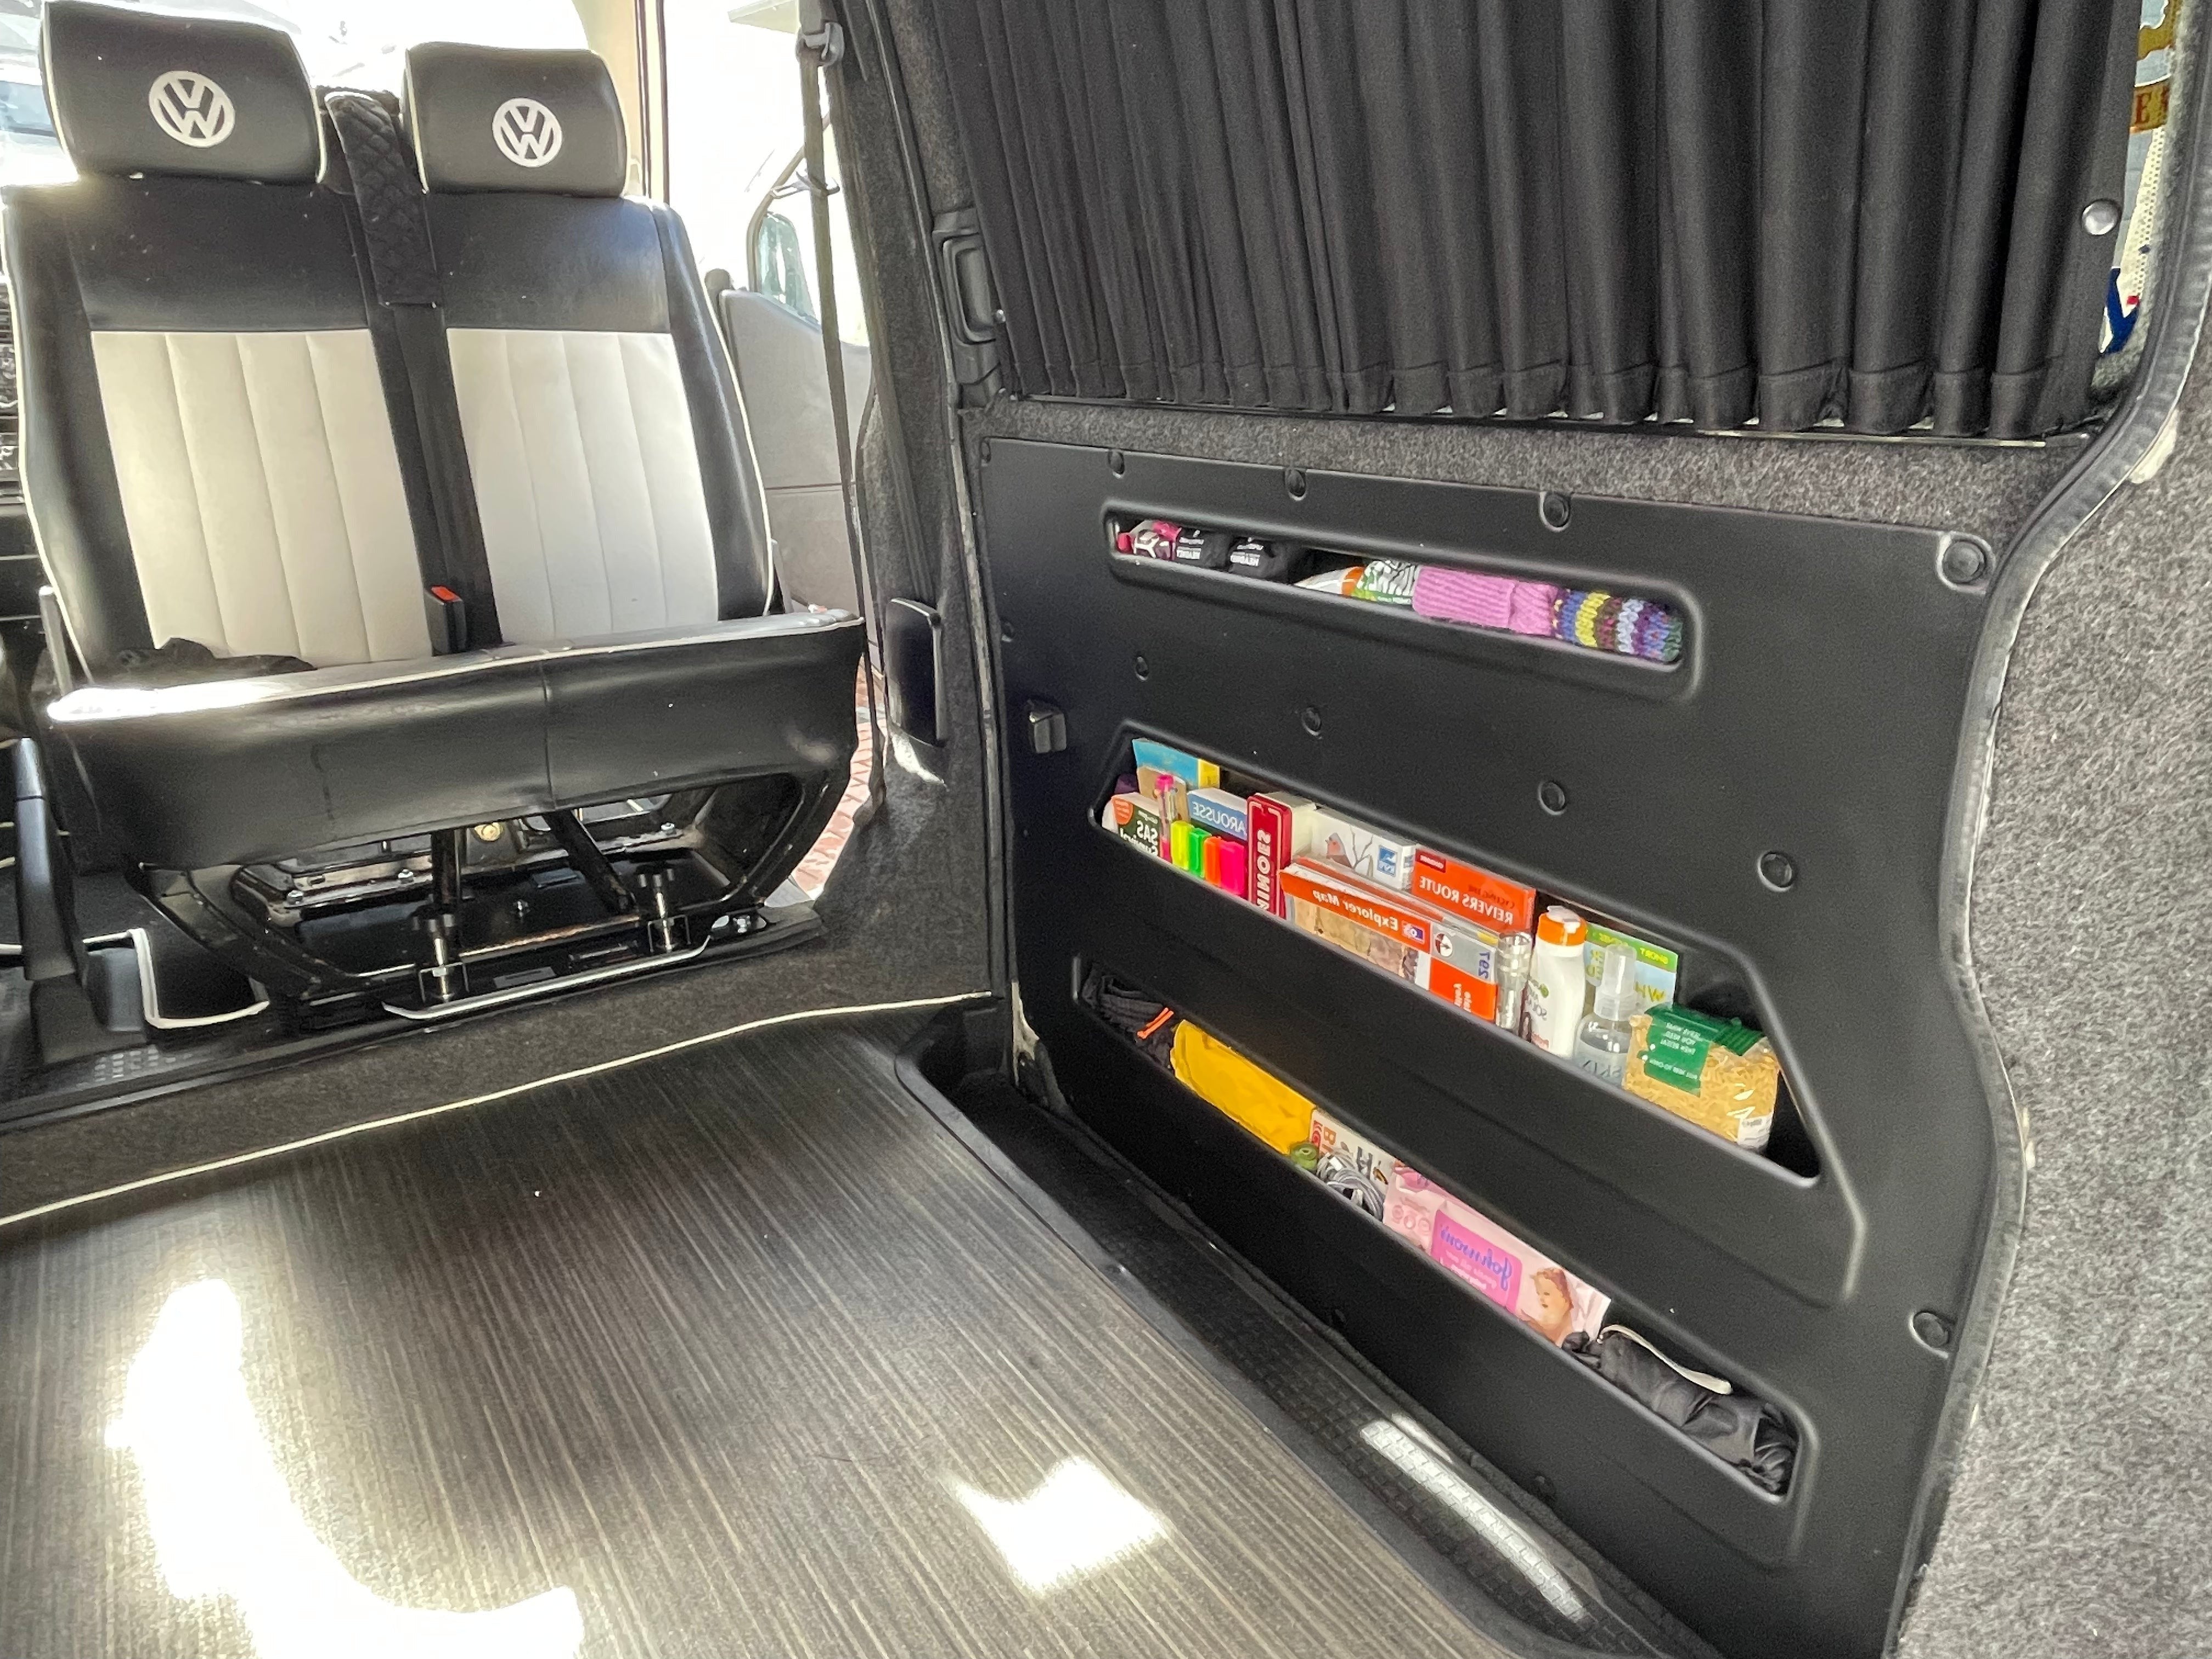 Kiravans VW T4 DoorStore - Schaffen Sie zusätzlichen Stauraum in Ihren Schiebetüren mit unseren linken und rechten Tür-Aufbewahrungstaschen